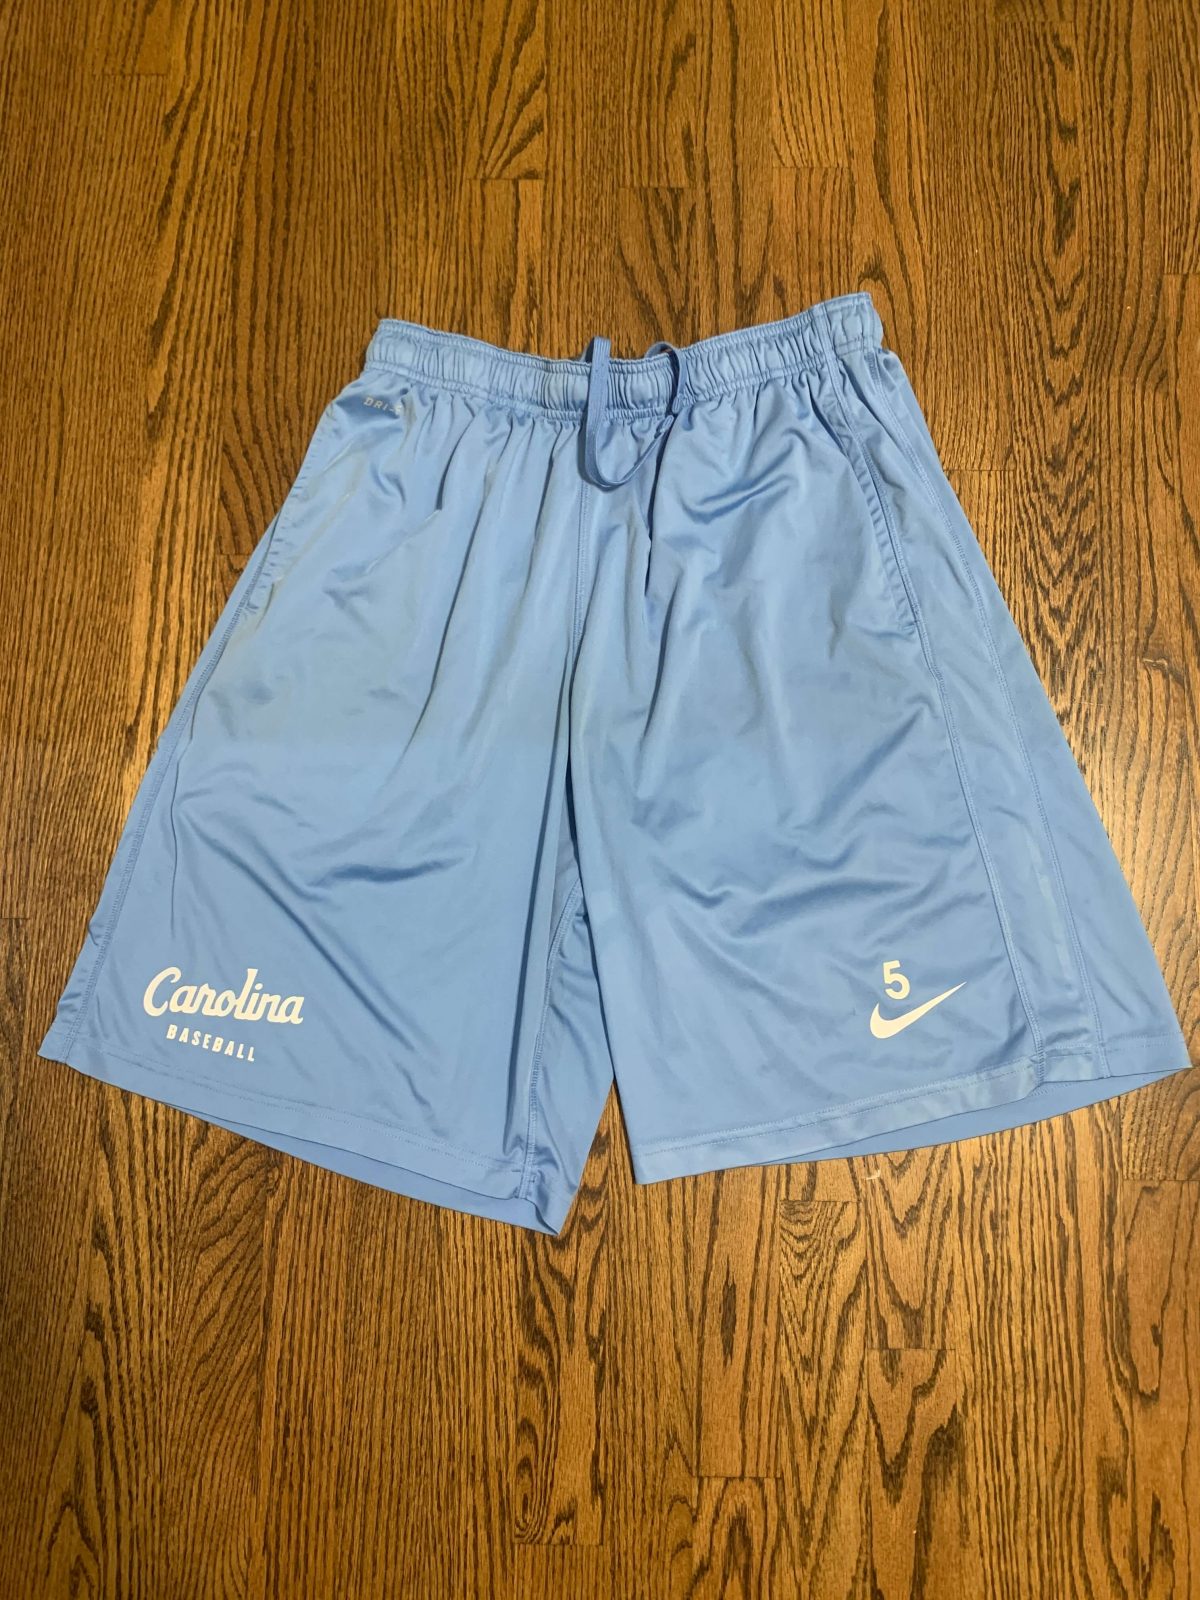 Ashton McGee UNC Baseball Nike Dri-Fit Shorts : NARP Clothing